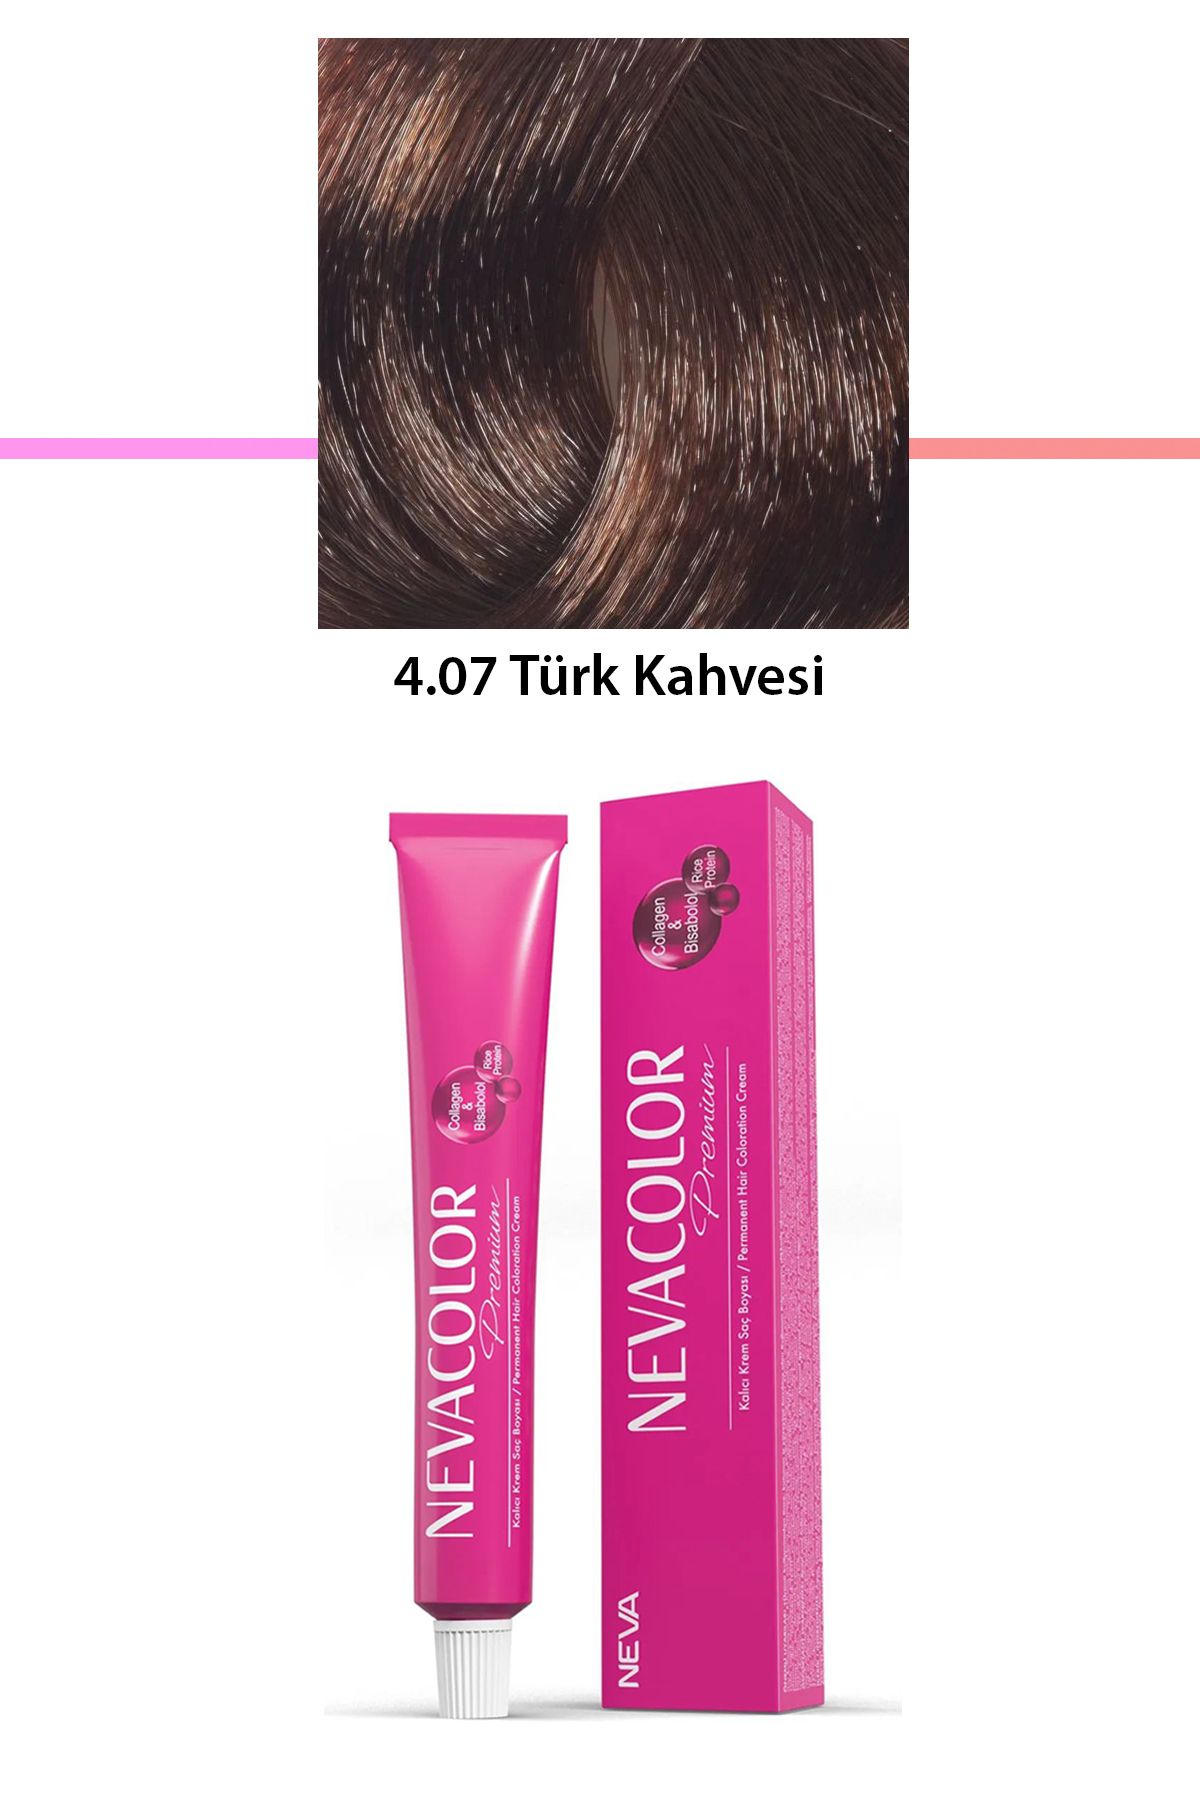 Neva Color Premium 4.07 Türk Kahvesi - Kalıcı Krem Saç Boyası 50 g Tüp